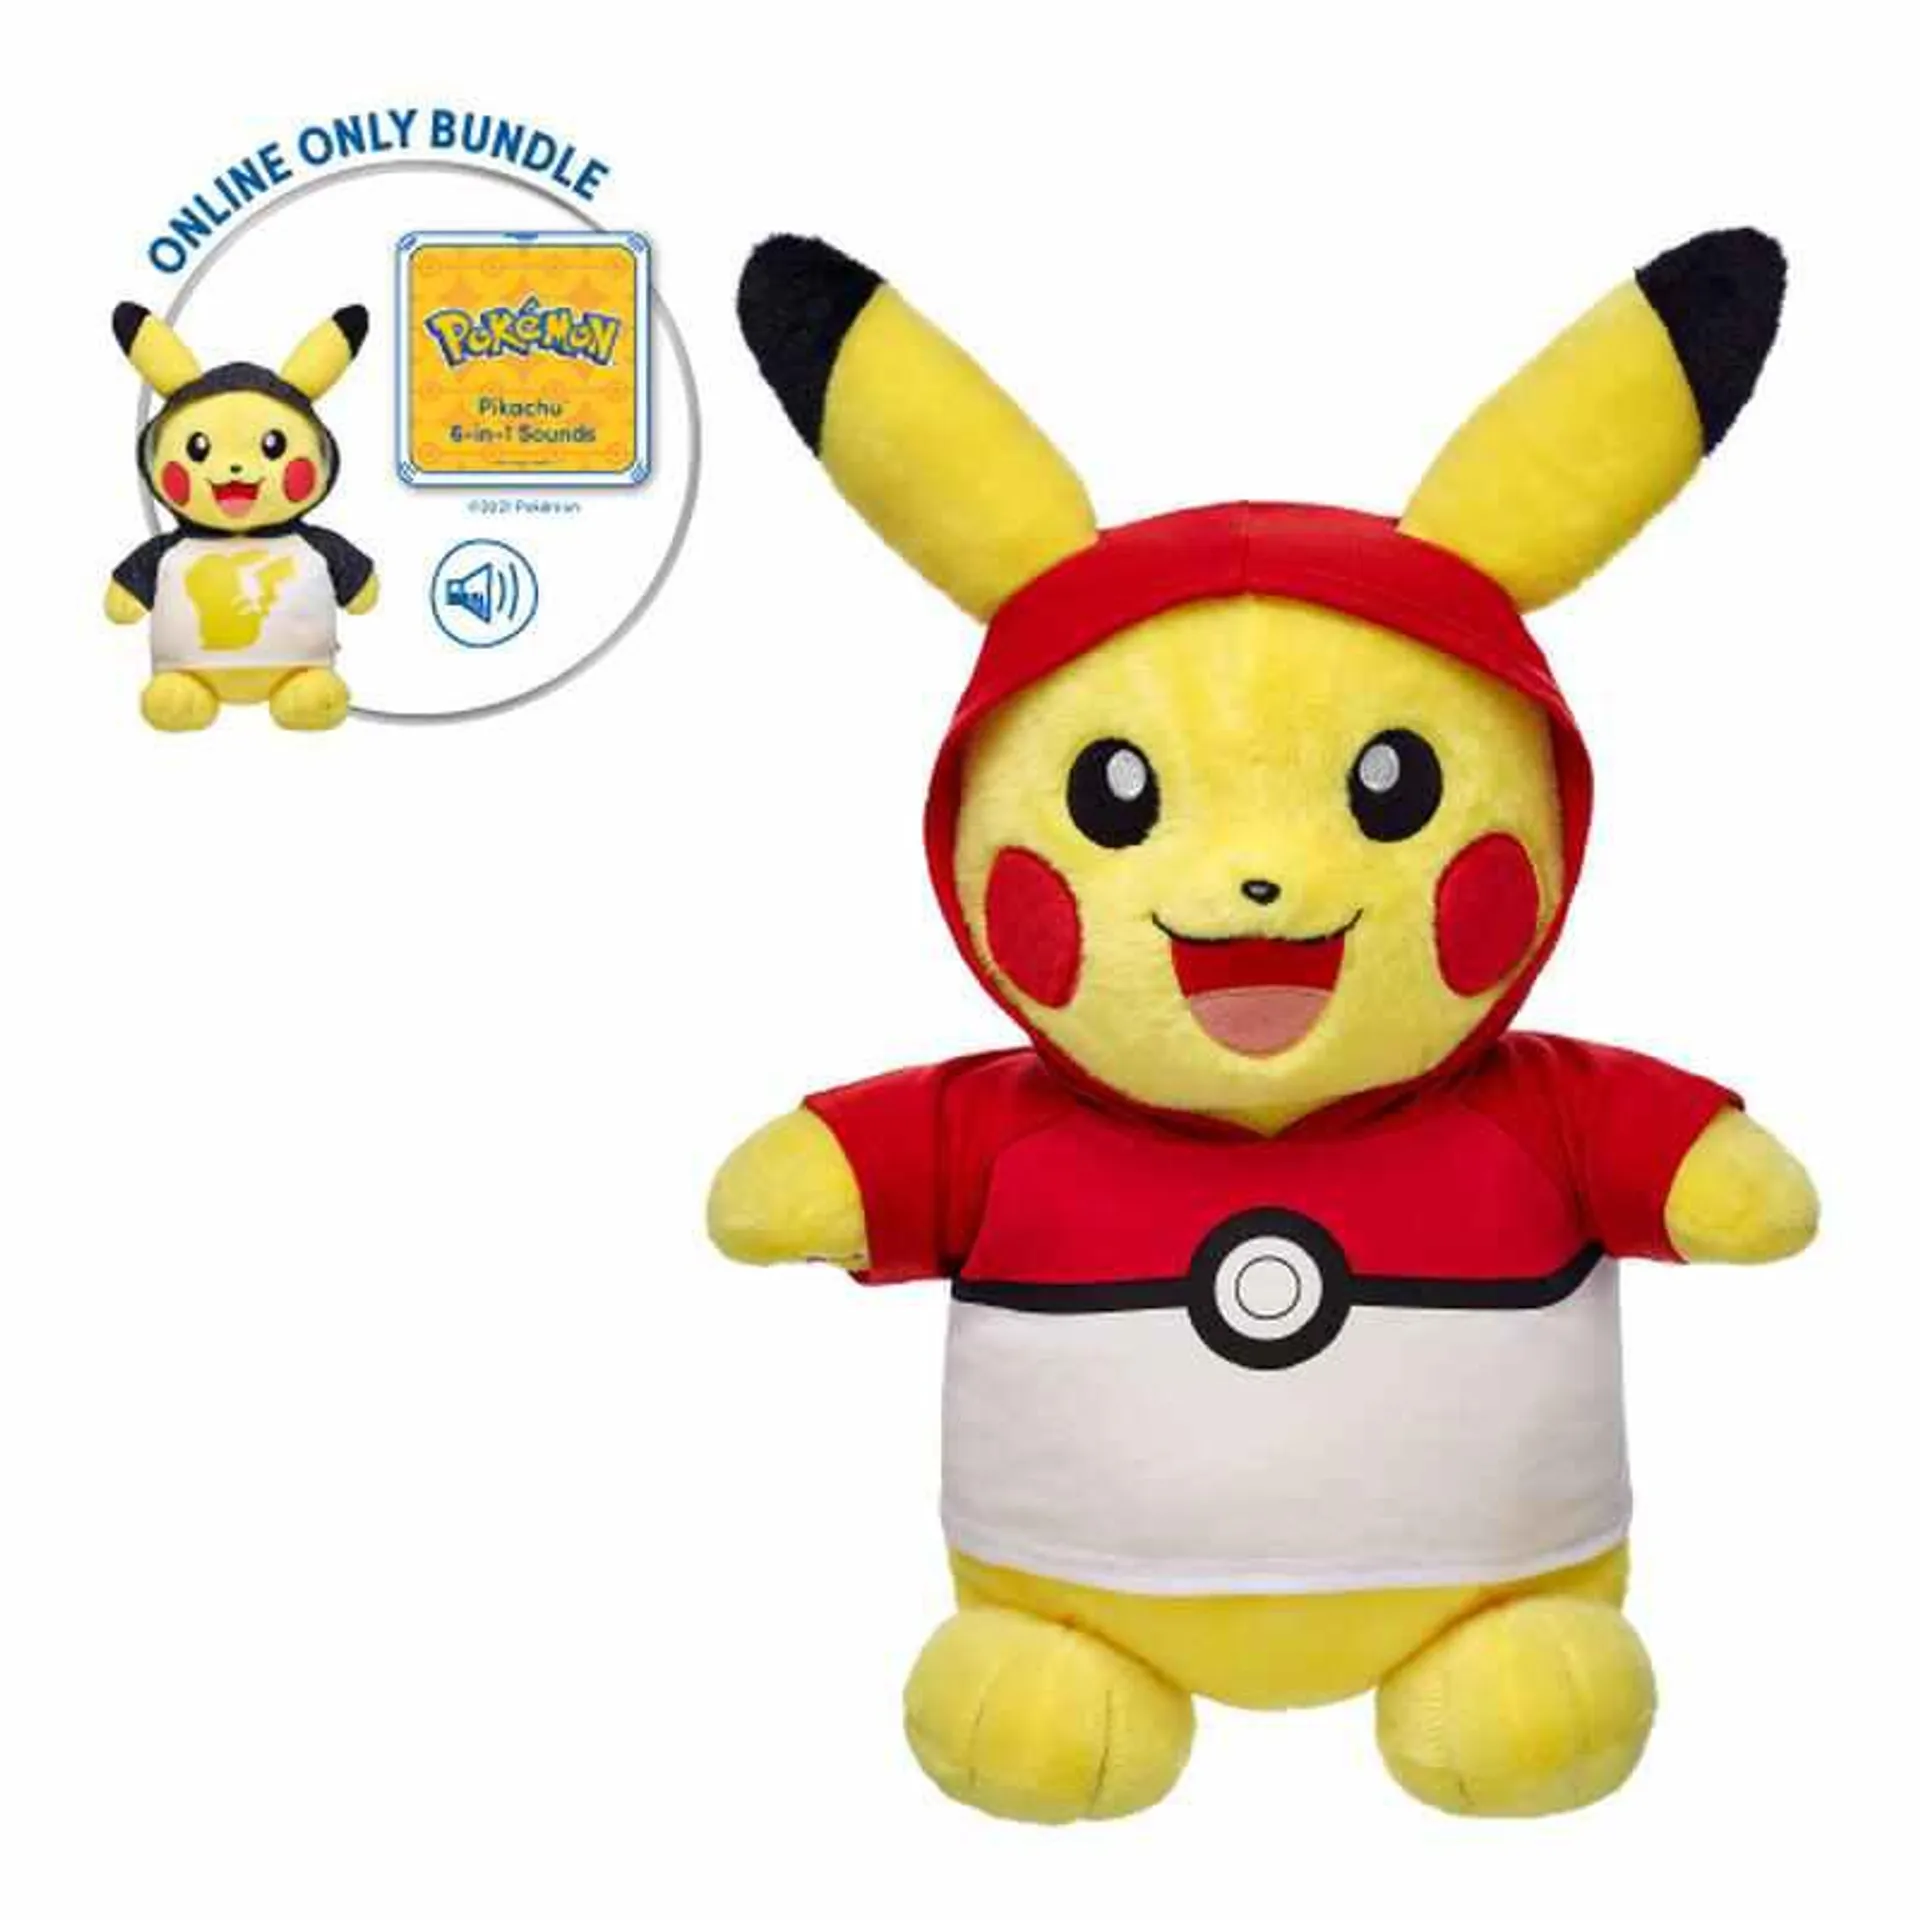 Pokémon Pikachu Plush Hoodie Bundle